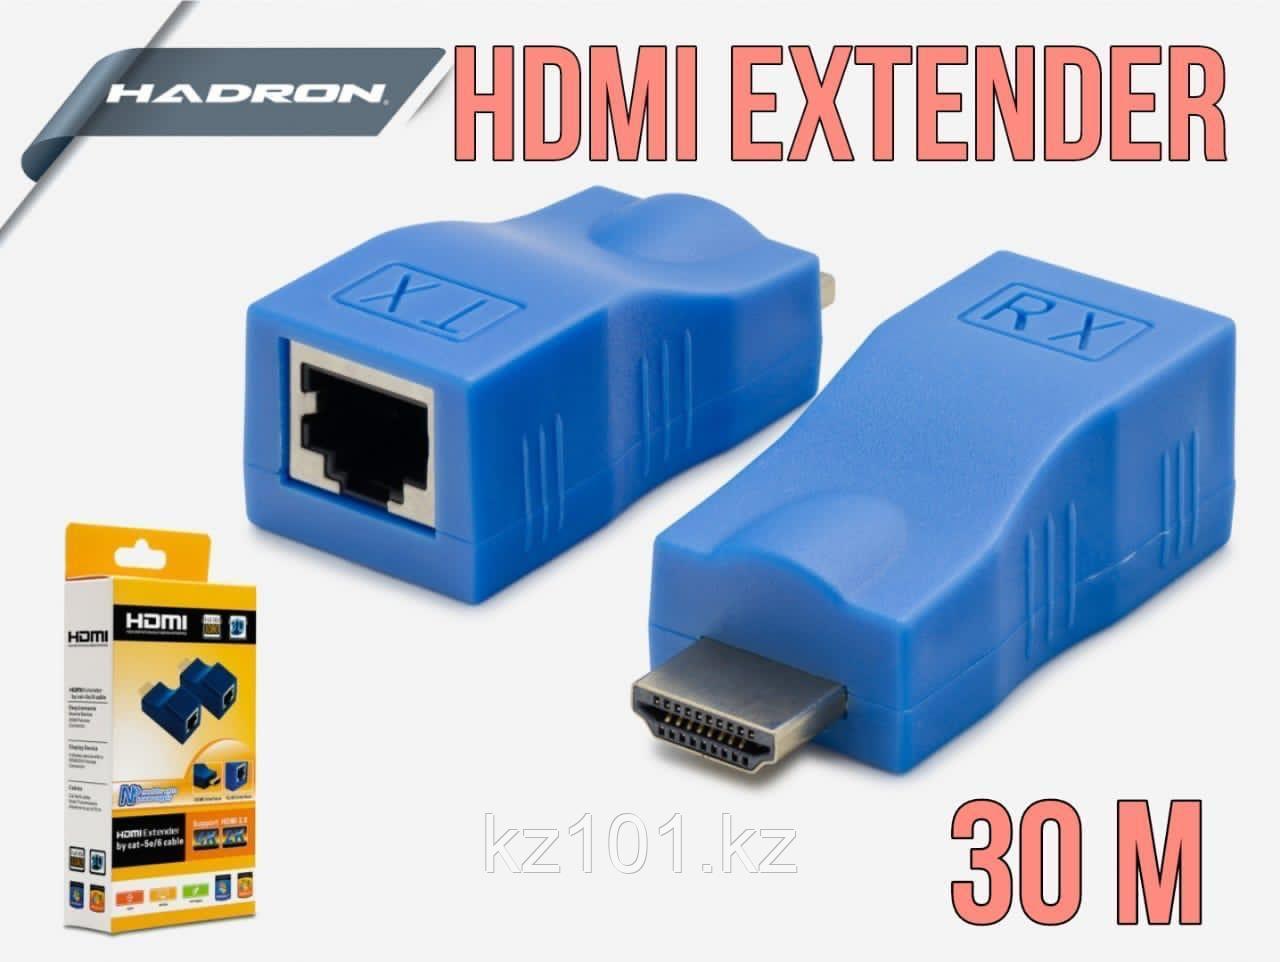 Удлинитель HDMI на 30 м (HDMI EXTENDER)